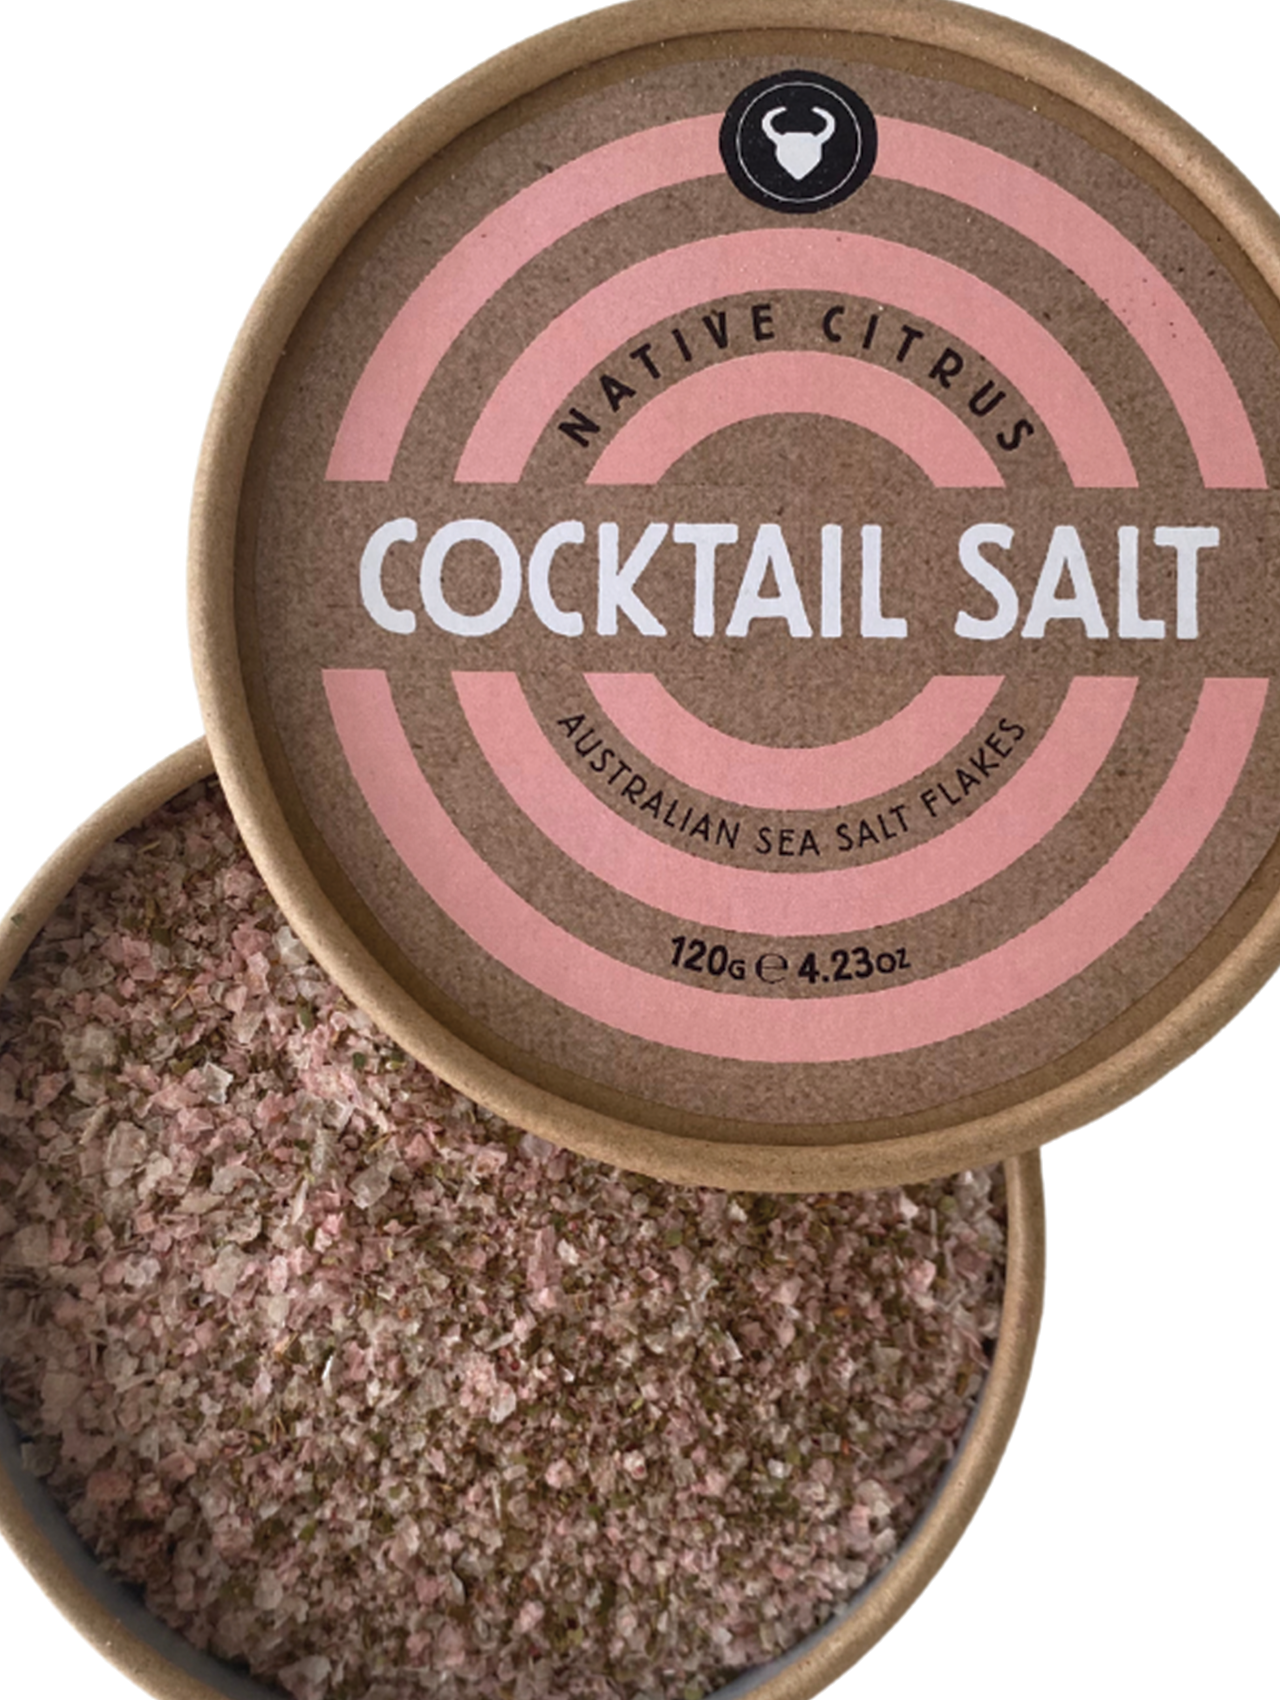 Olsson's Native Citrus Cocktail Salt